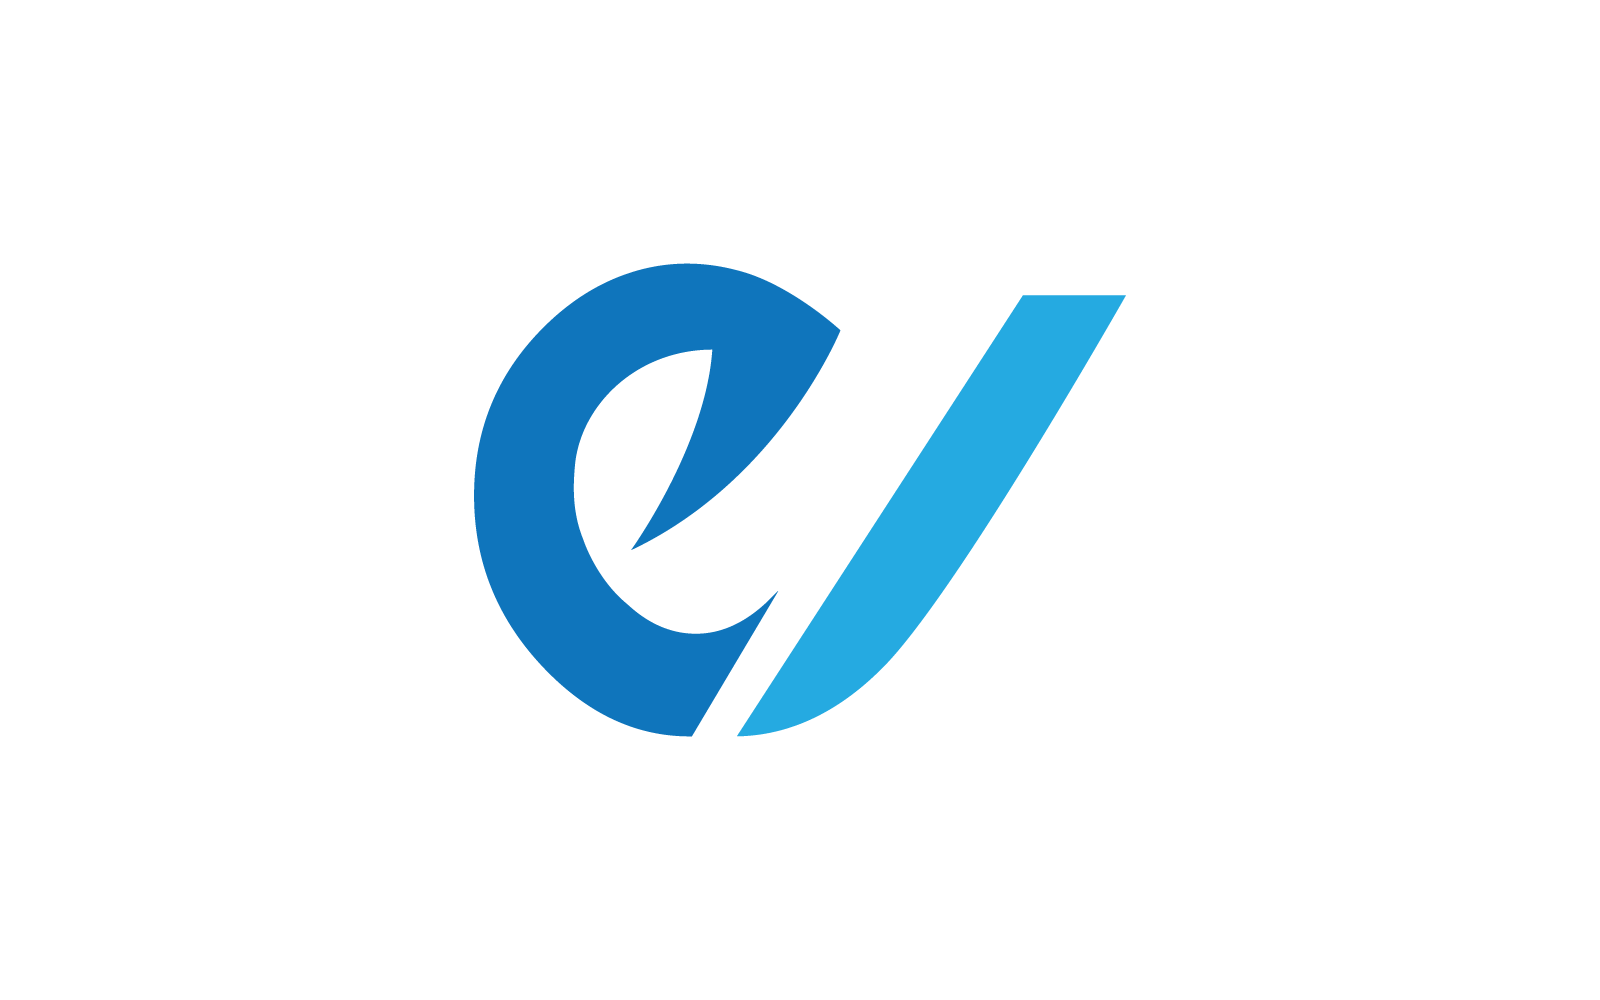 Modern E kezdőbetű, betű, ábécé betűtípus logó vektor tervezés